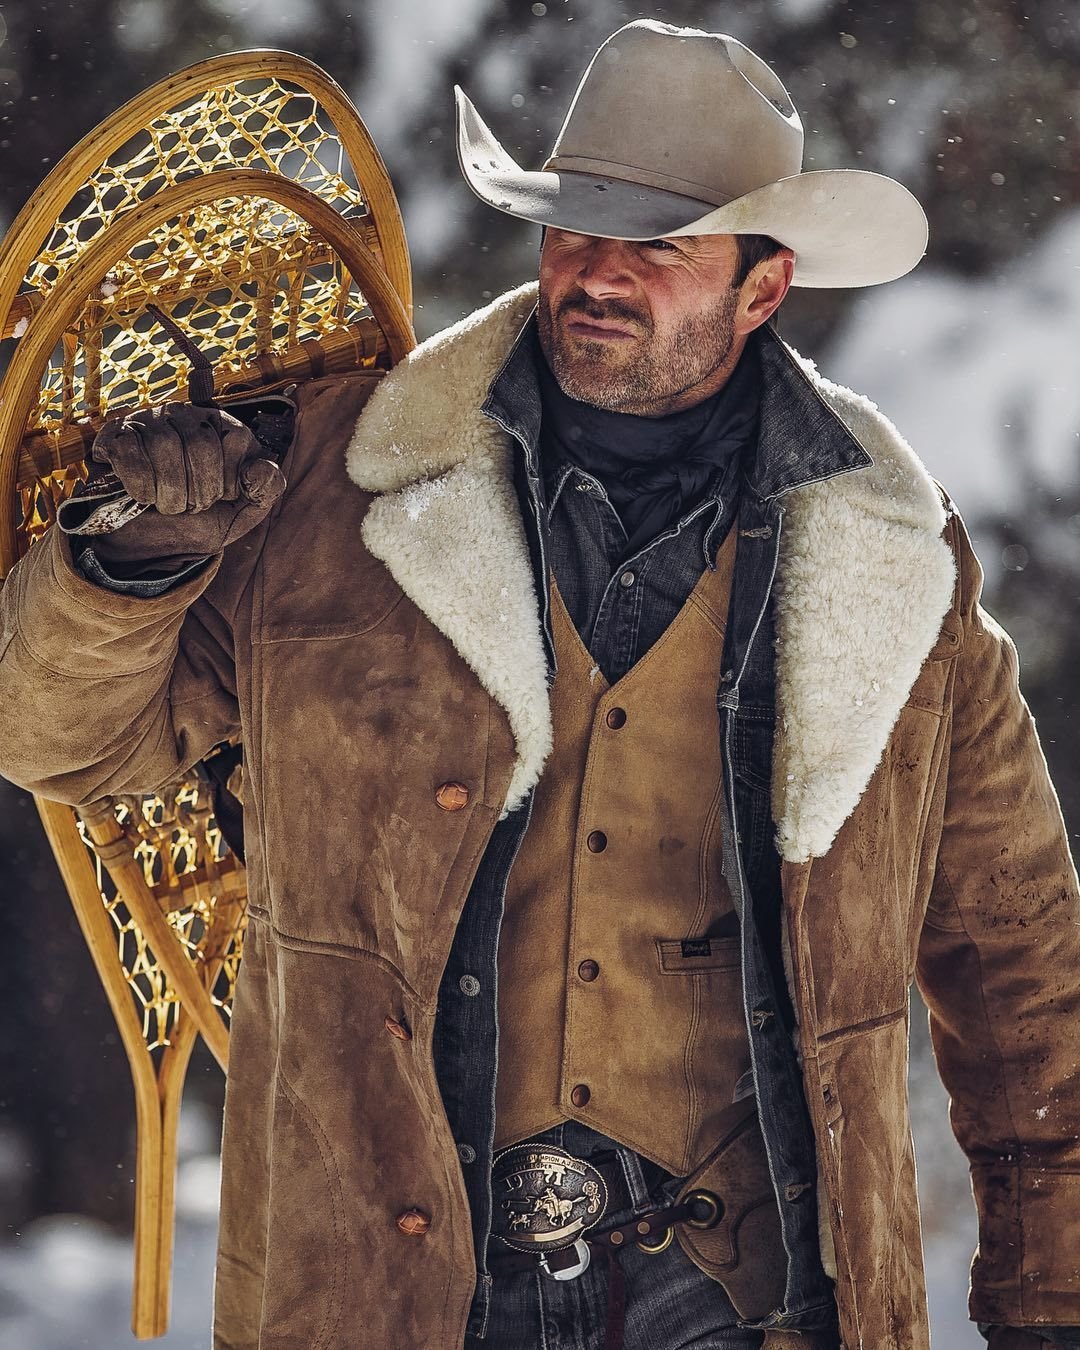 West man. Western & Cowboy стиль одежды. Ковбои вилд Вест. Ковбойский стиль мужской. Ковбой в зимней одежде.